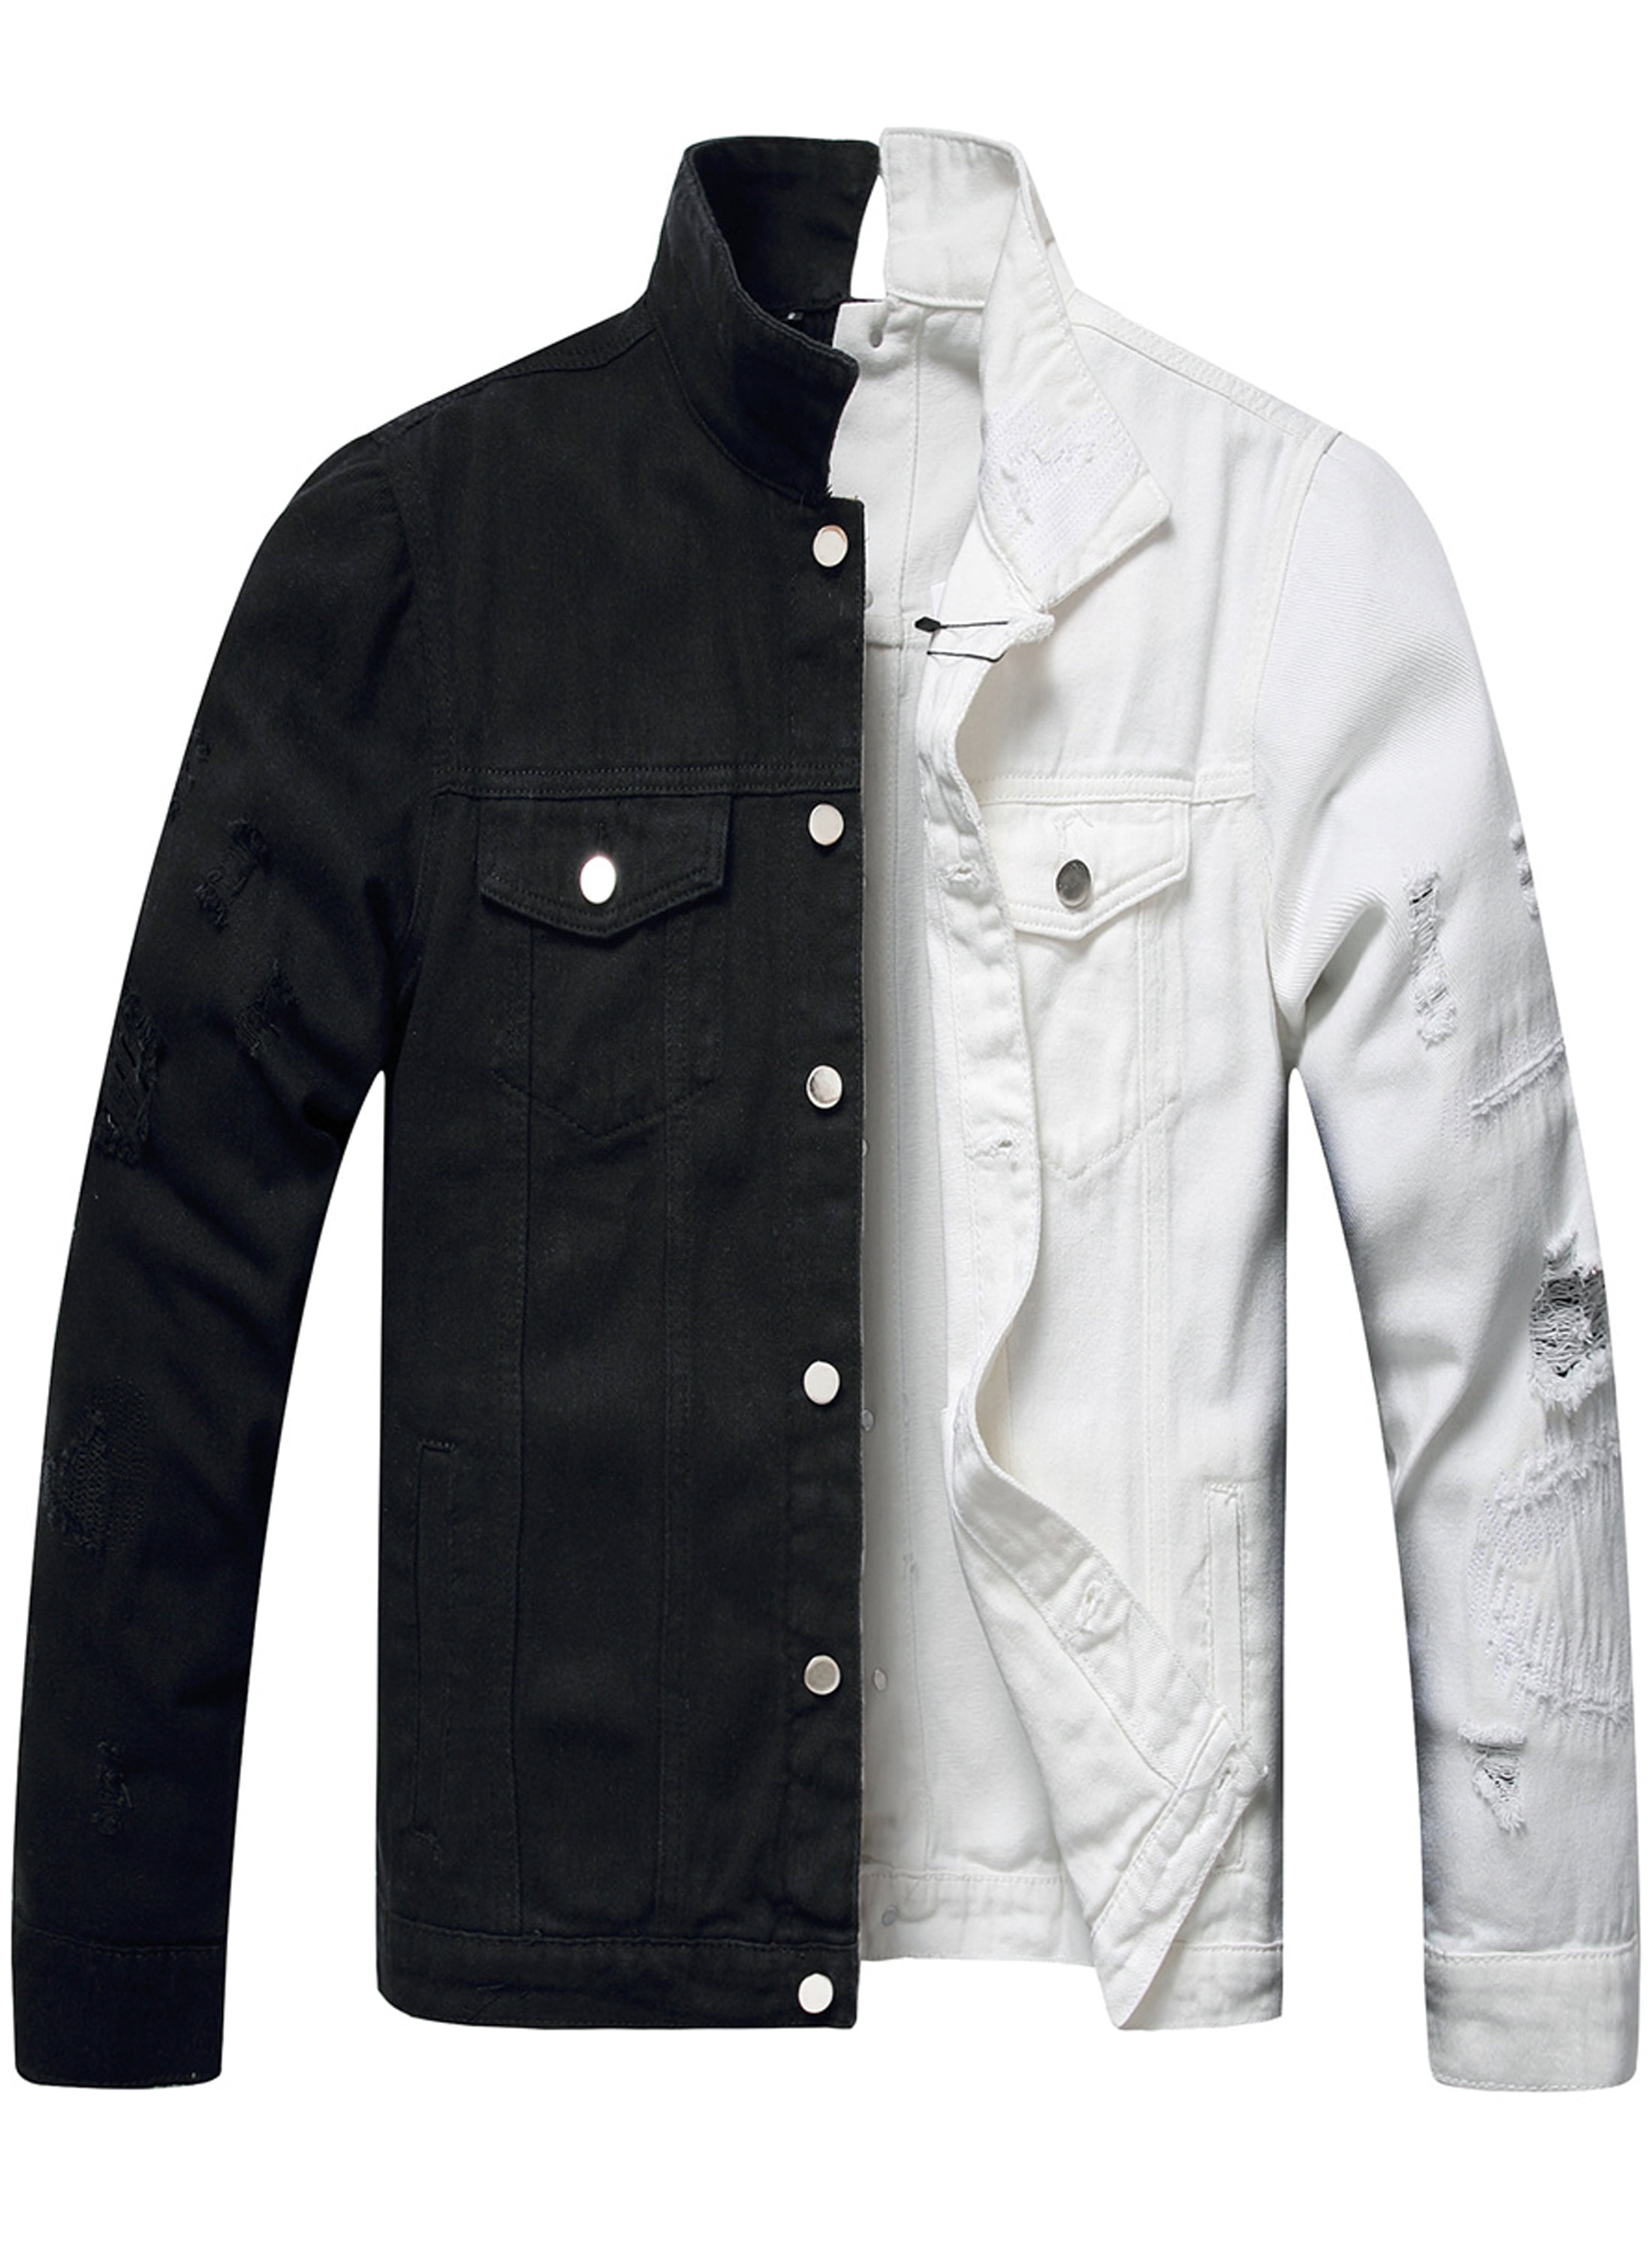 LZLER Black Jean Jacket for Men Ripped Color Block Denim Jacket - Walmart.com